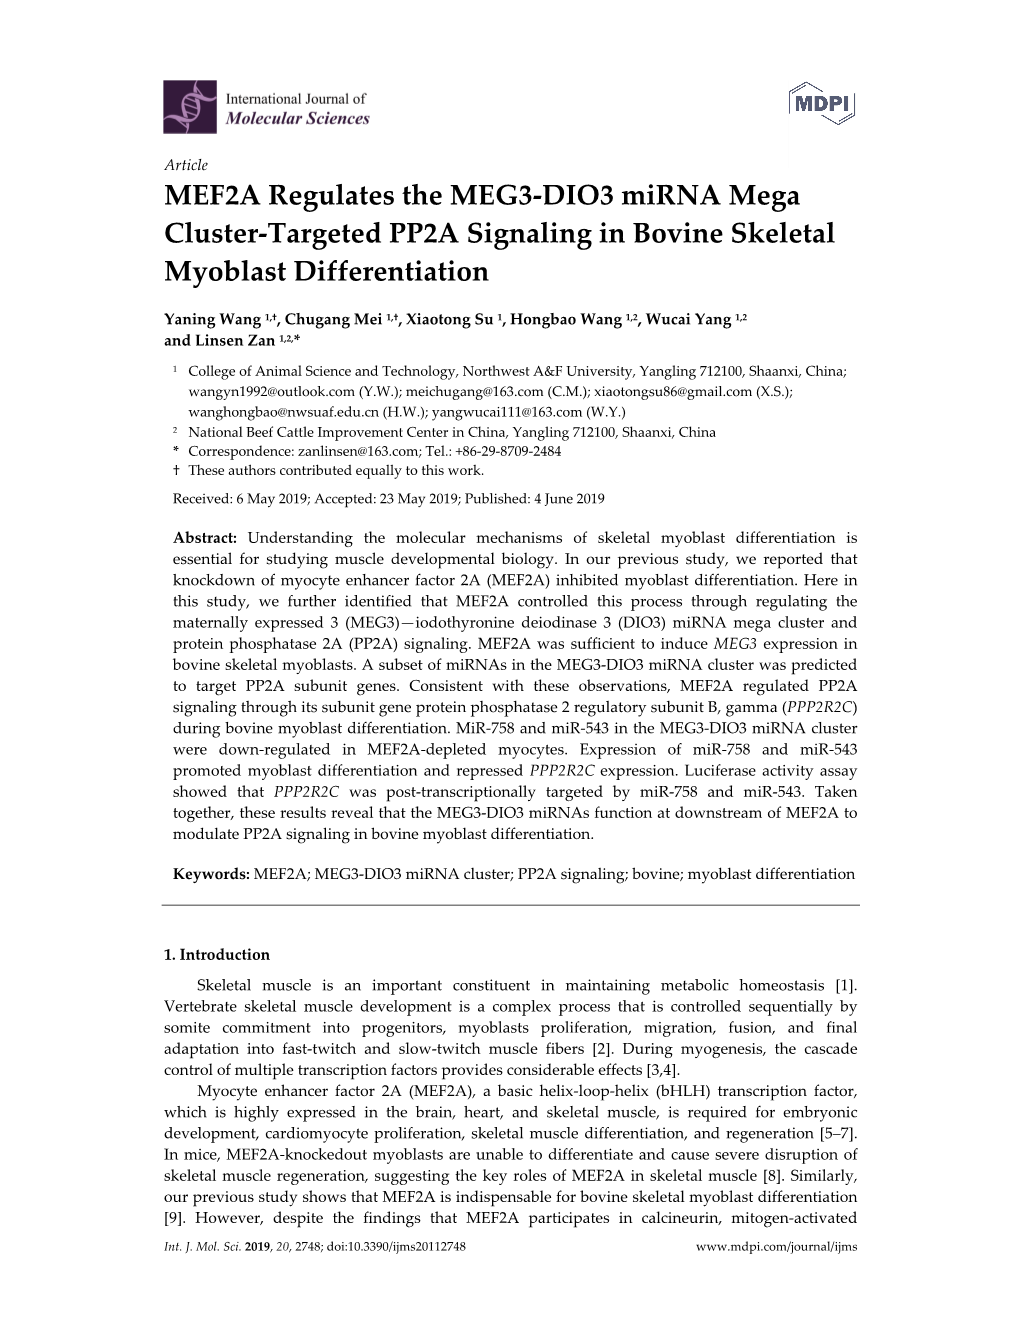 MEF2A Regulates the MEG3-DIO3 Mirna Mega Cluster-Targeted